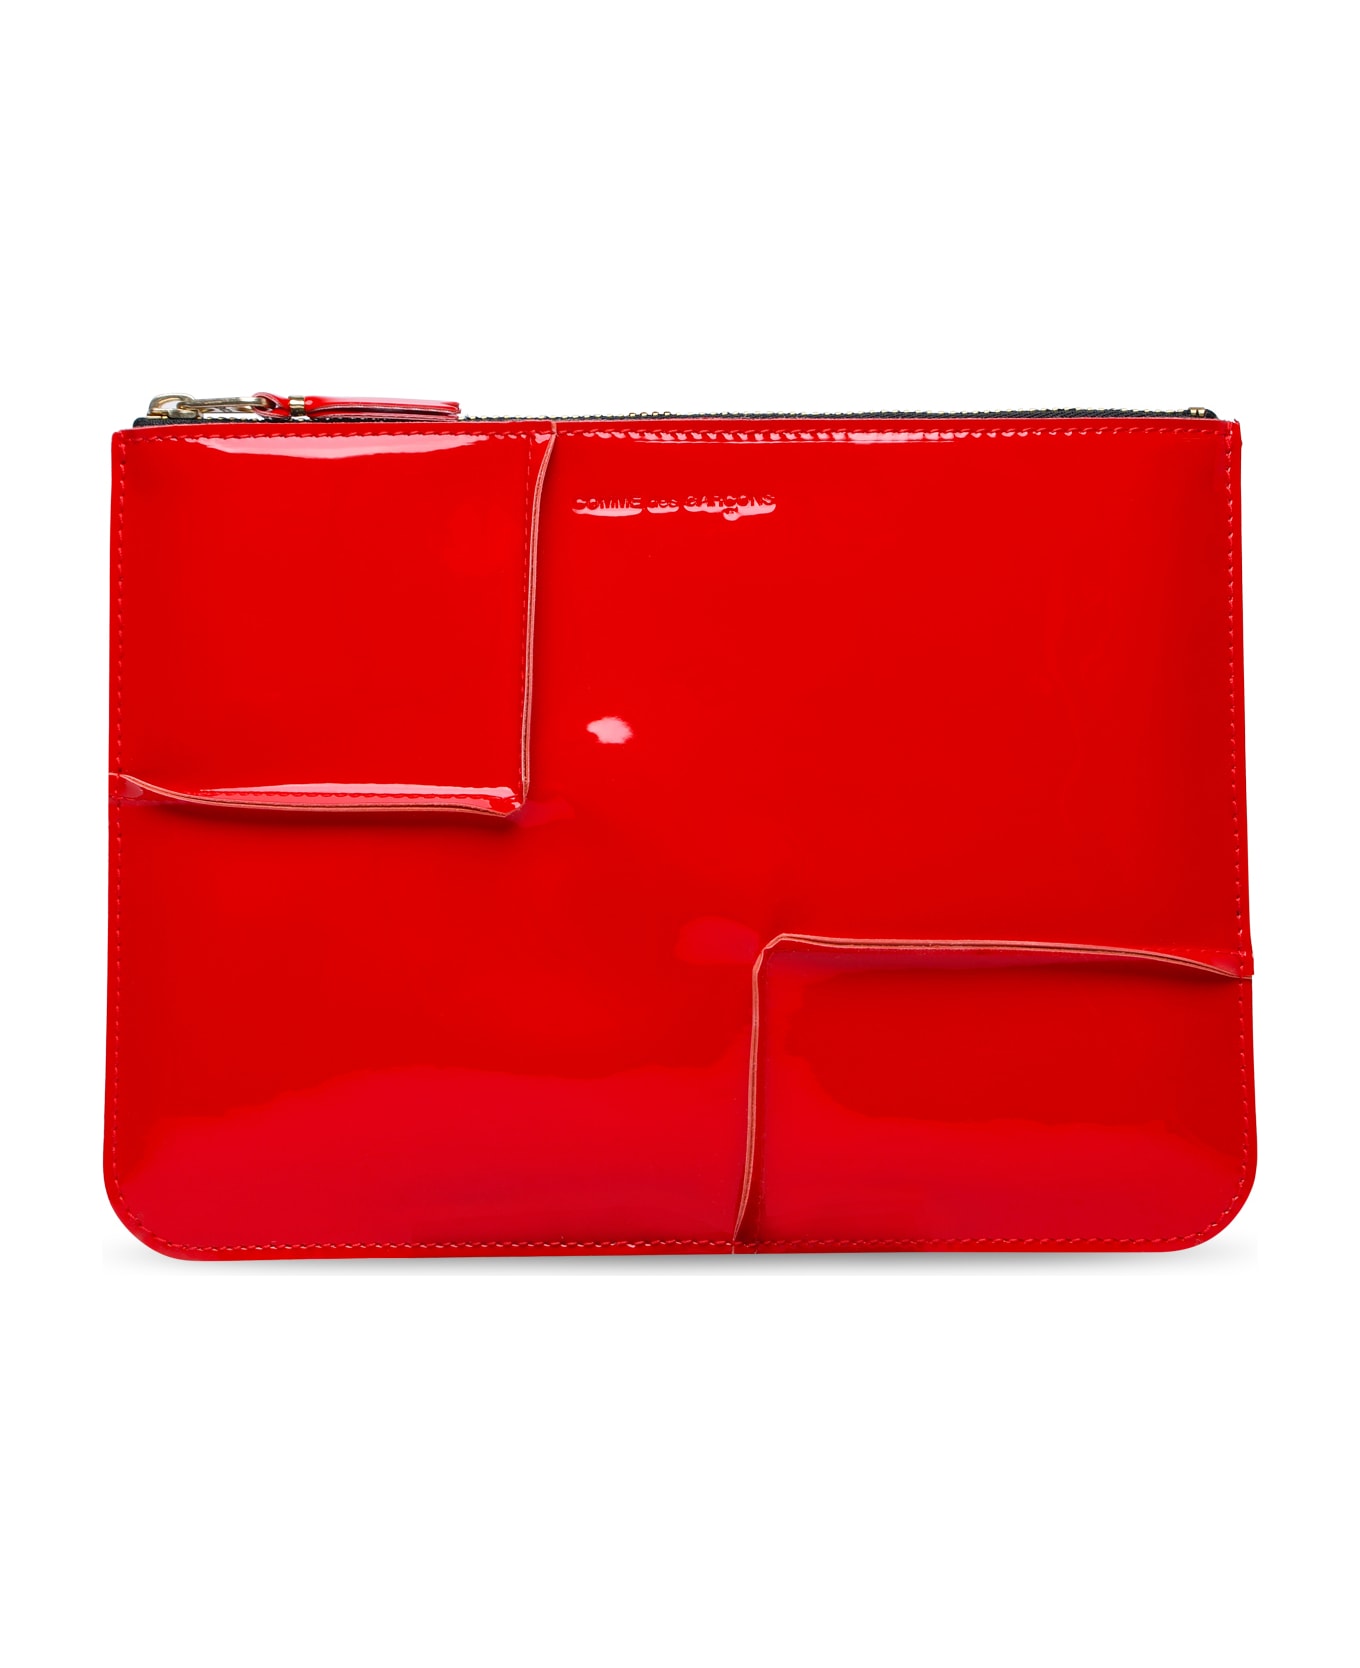 Comme des Garçons Wallet 'medley' Red Leather Envelope - Red 財布